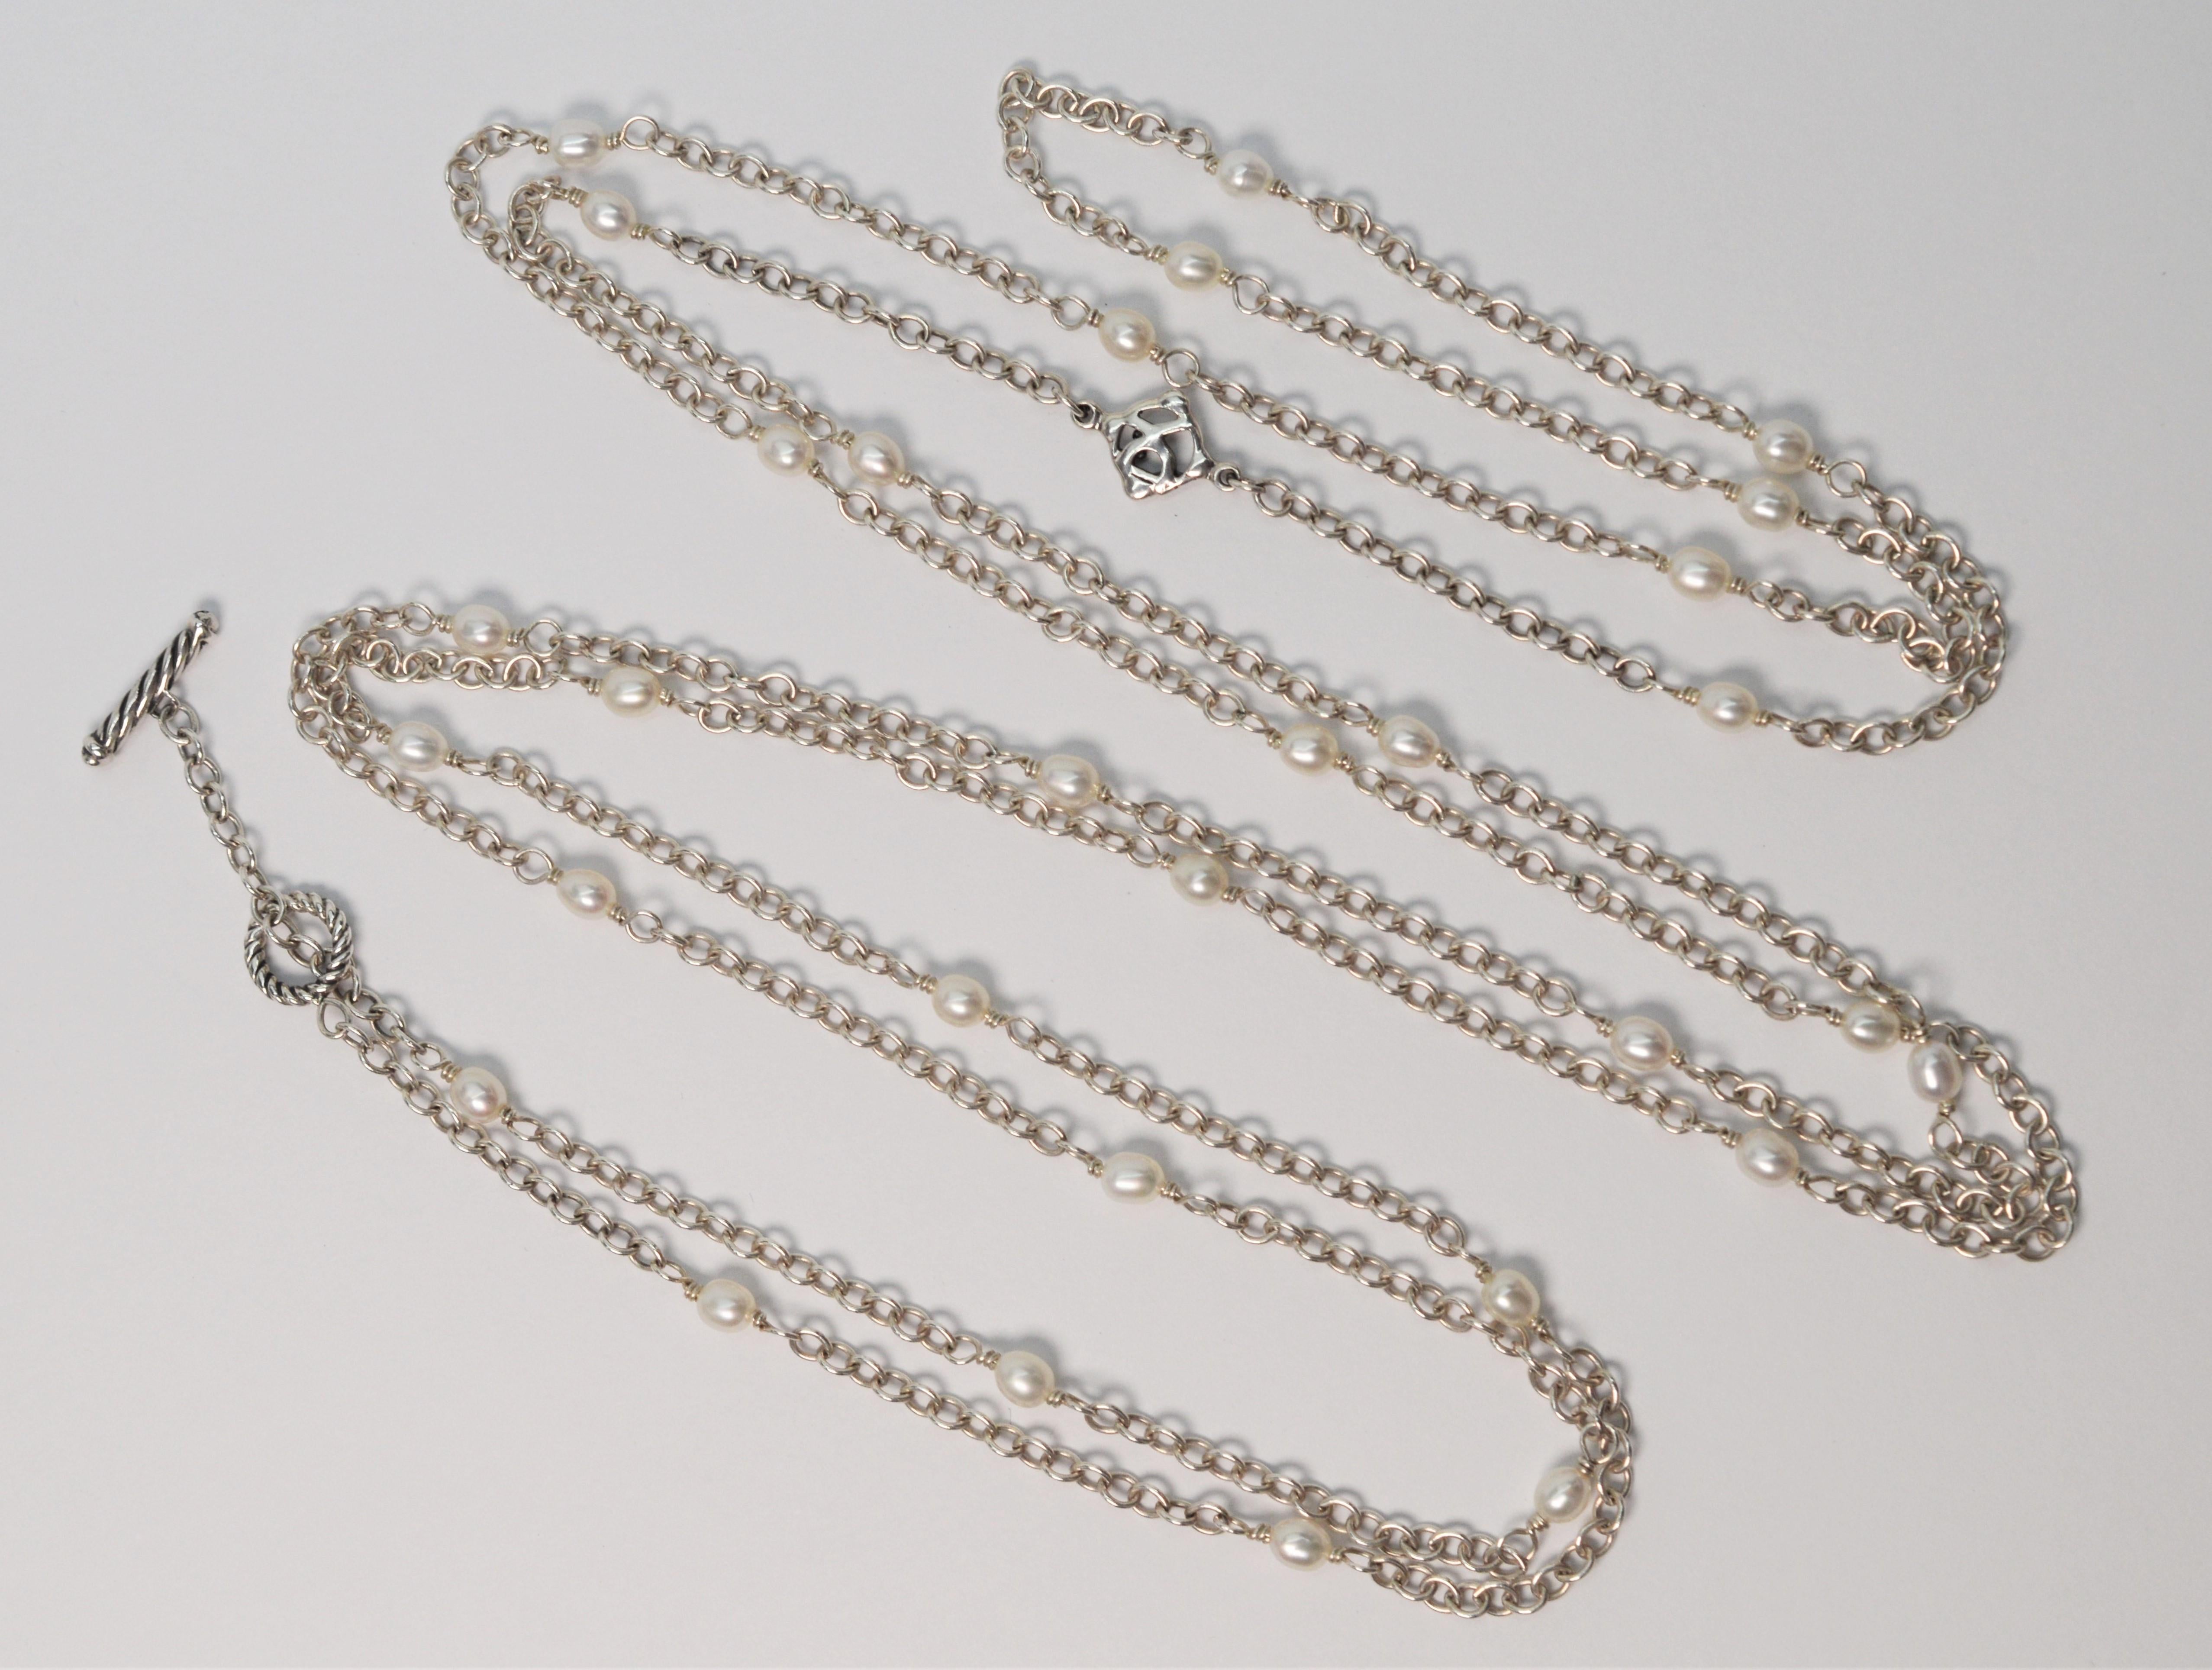 Lang in der Länge mit viel Stil, ist diese schwer zu finden 64 Zoll Sterling Silber David Yurman Kette Halskette eine notwendige Garderobe Grundnahrungsmittel. Die großzügige Länge dieser Kette aus der DY Cable Collection ermöglicht es, sie perfekt